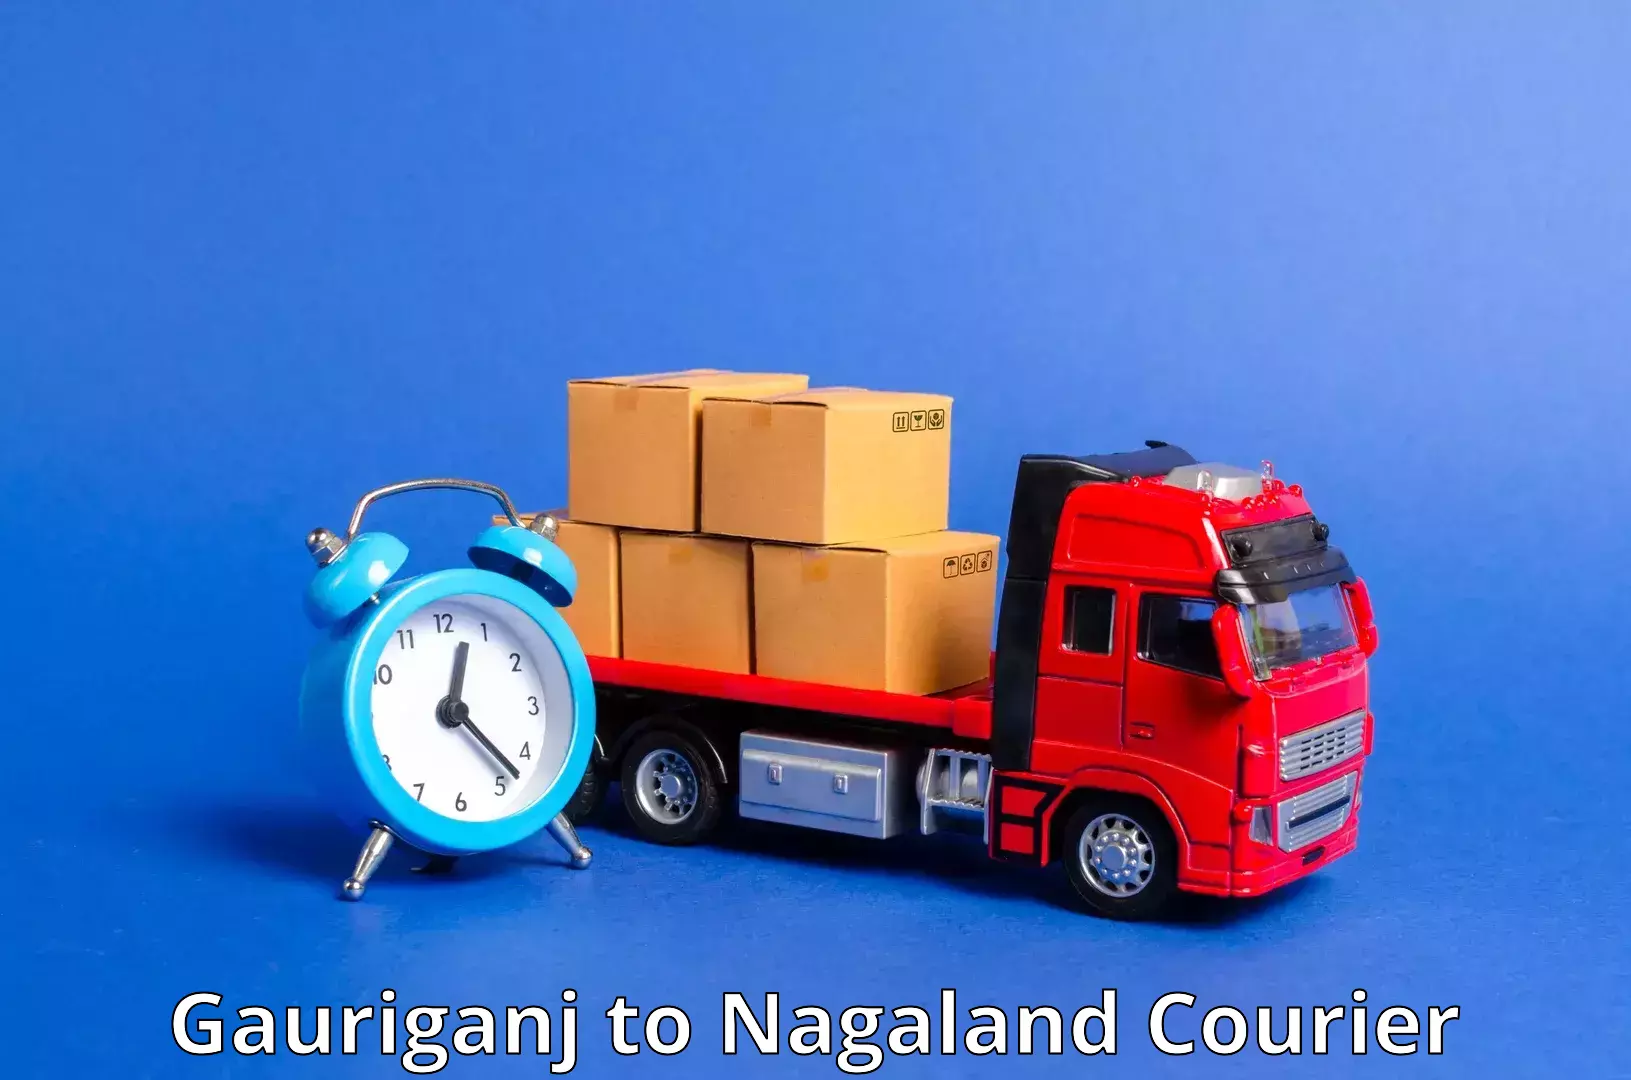 Efficient parcel service Gauriganj to Longleng